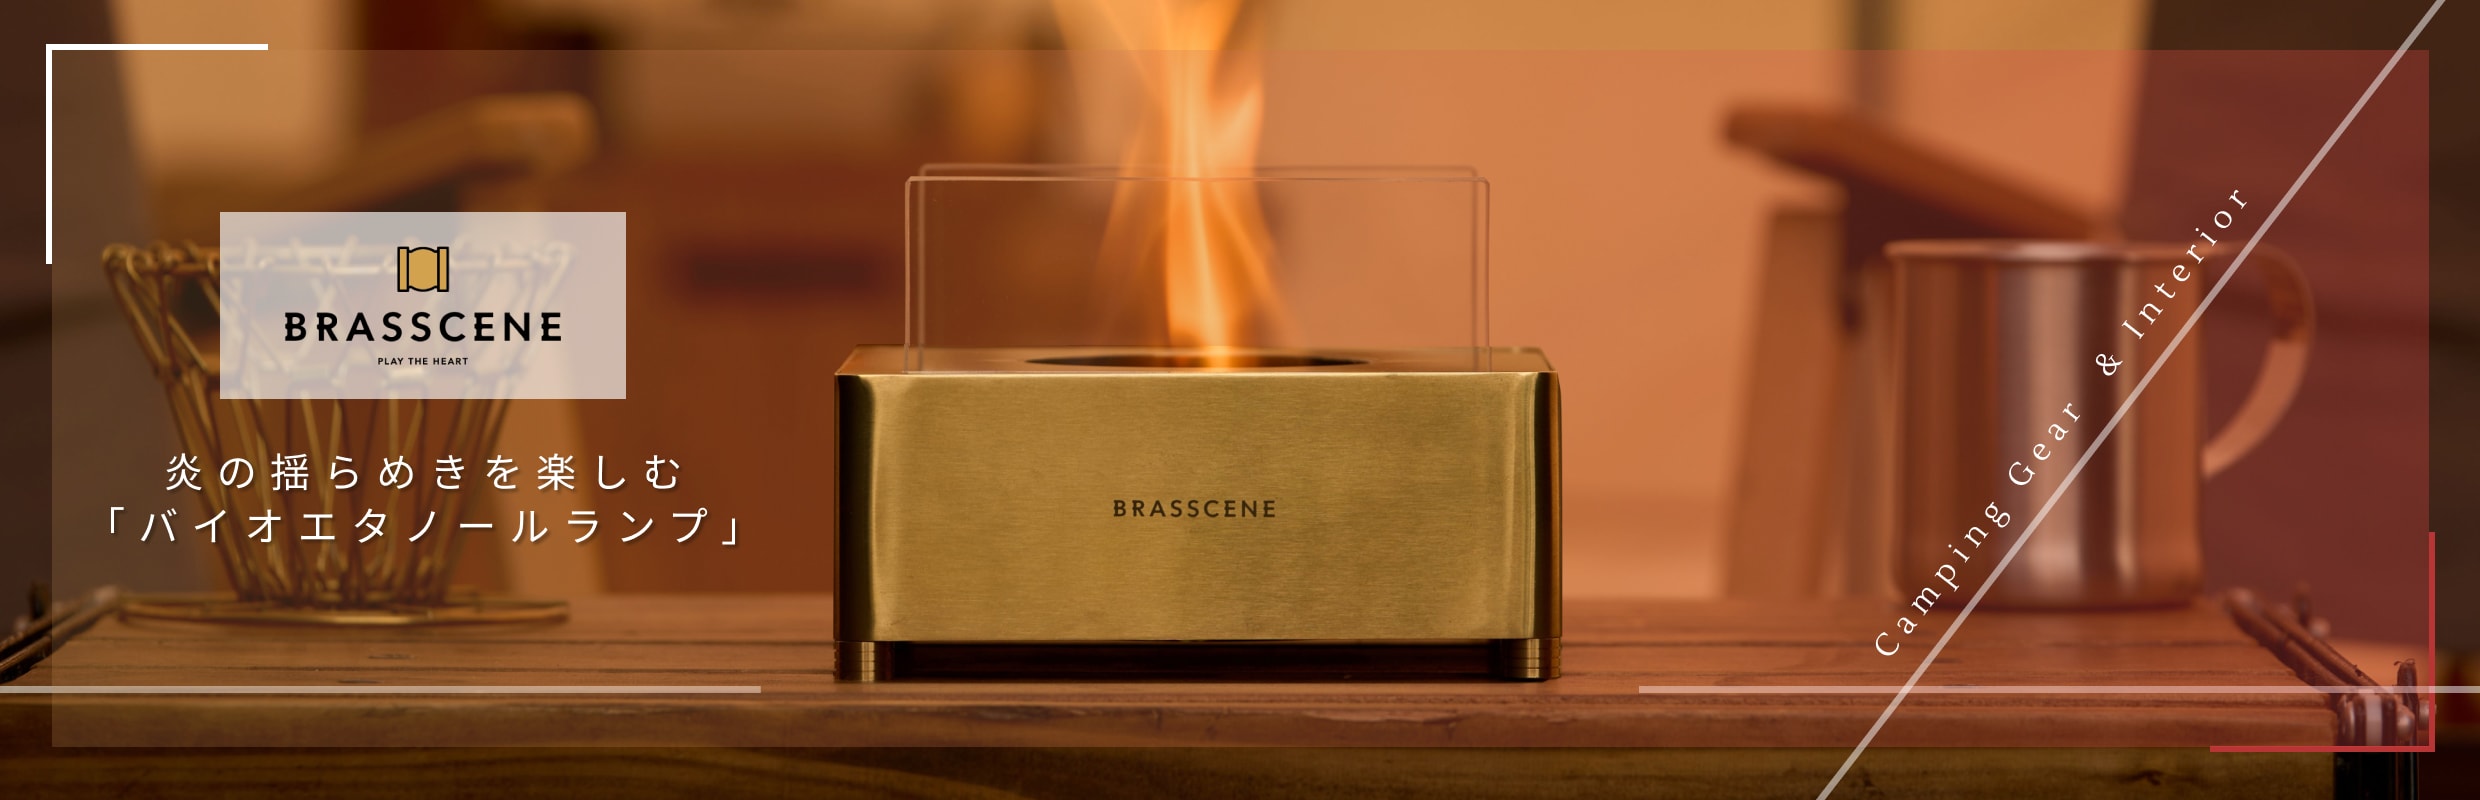 山本工業有限会社 BRASSCENE（ブラシーネ） 炎の揺らめきを楽しむ「バイオエタノールランプ」